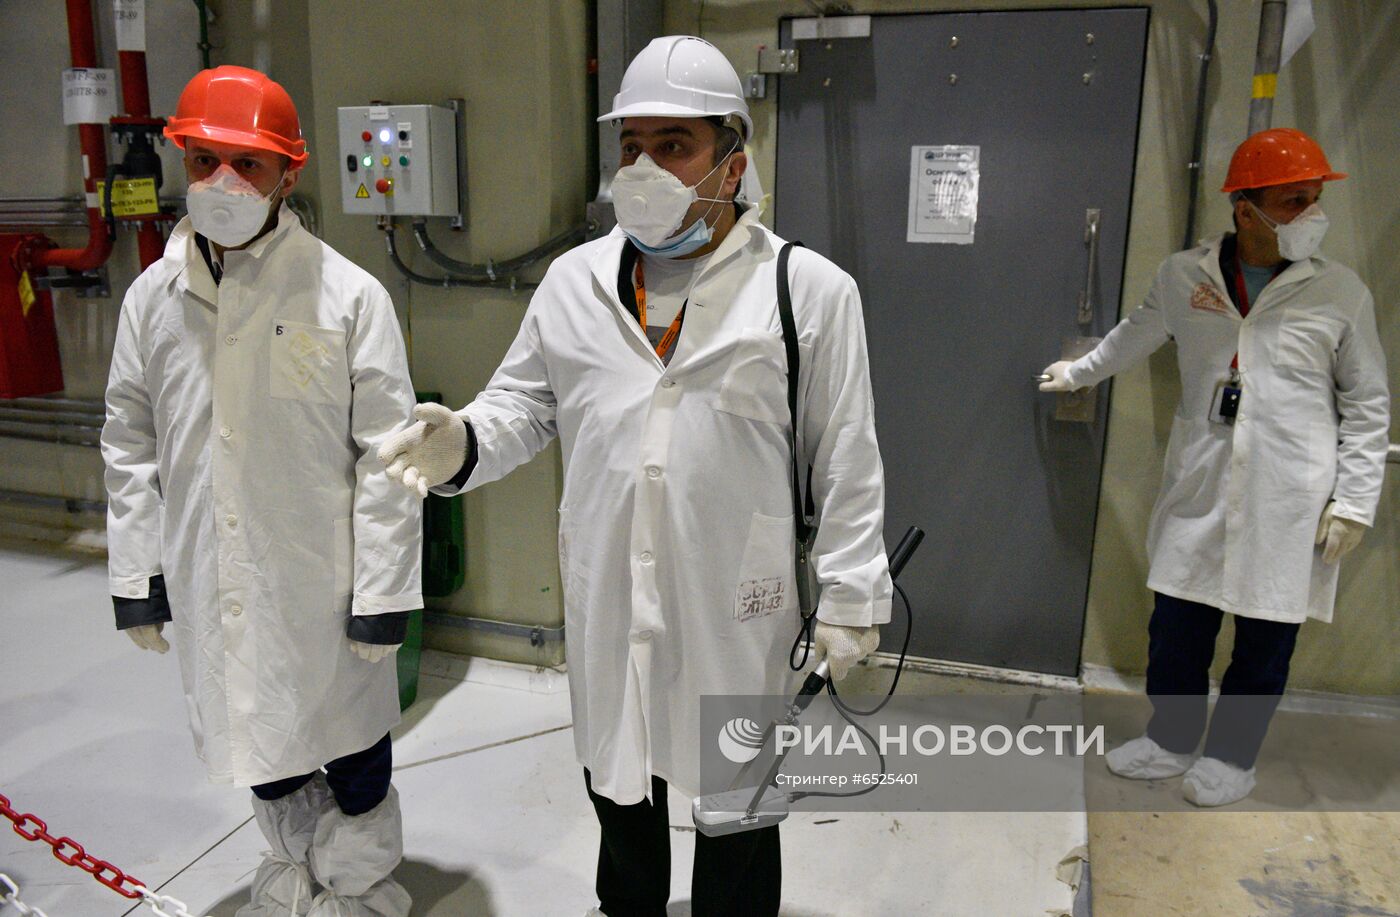 Саркофаг в зоне отчуждения Чернобыльской АЭС